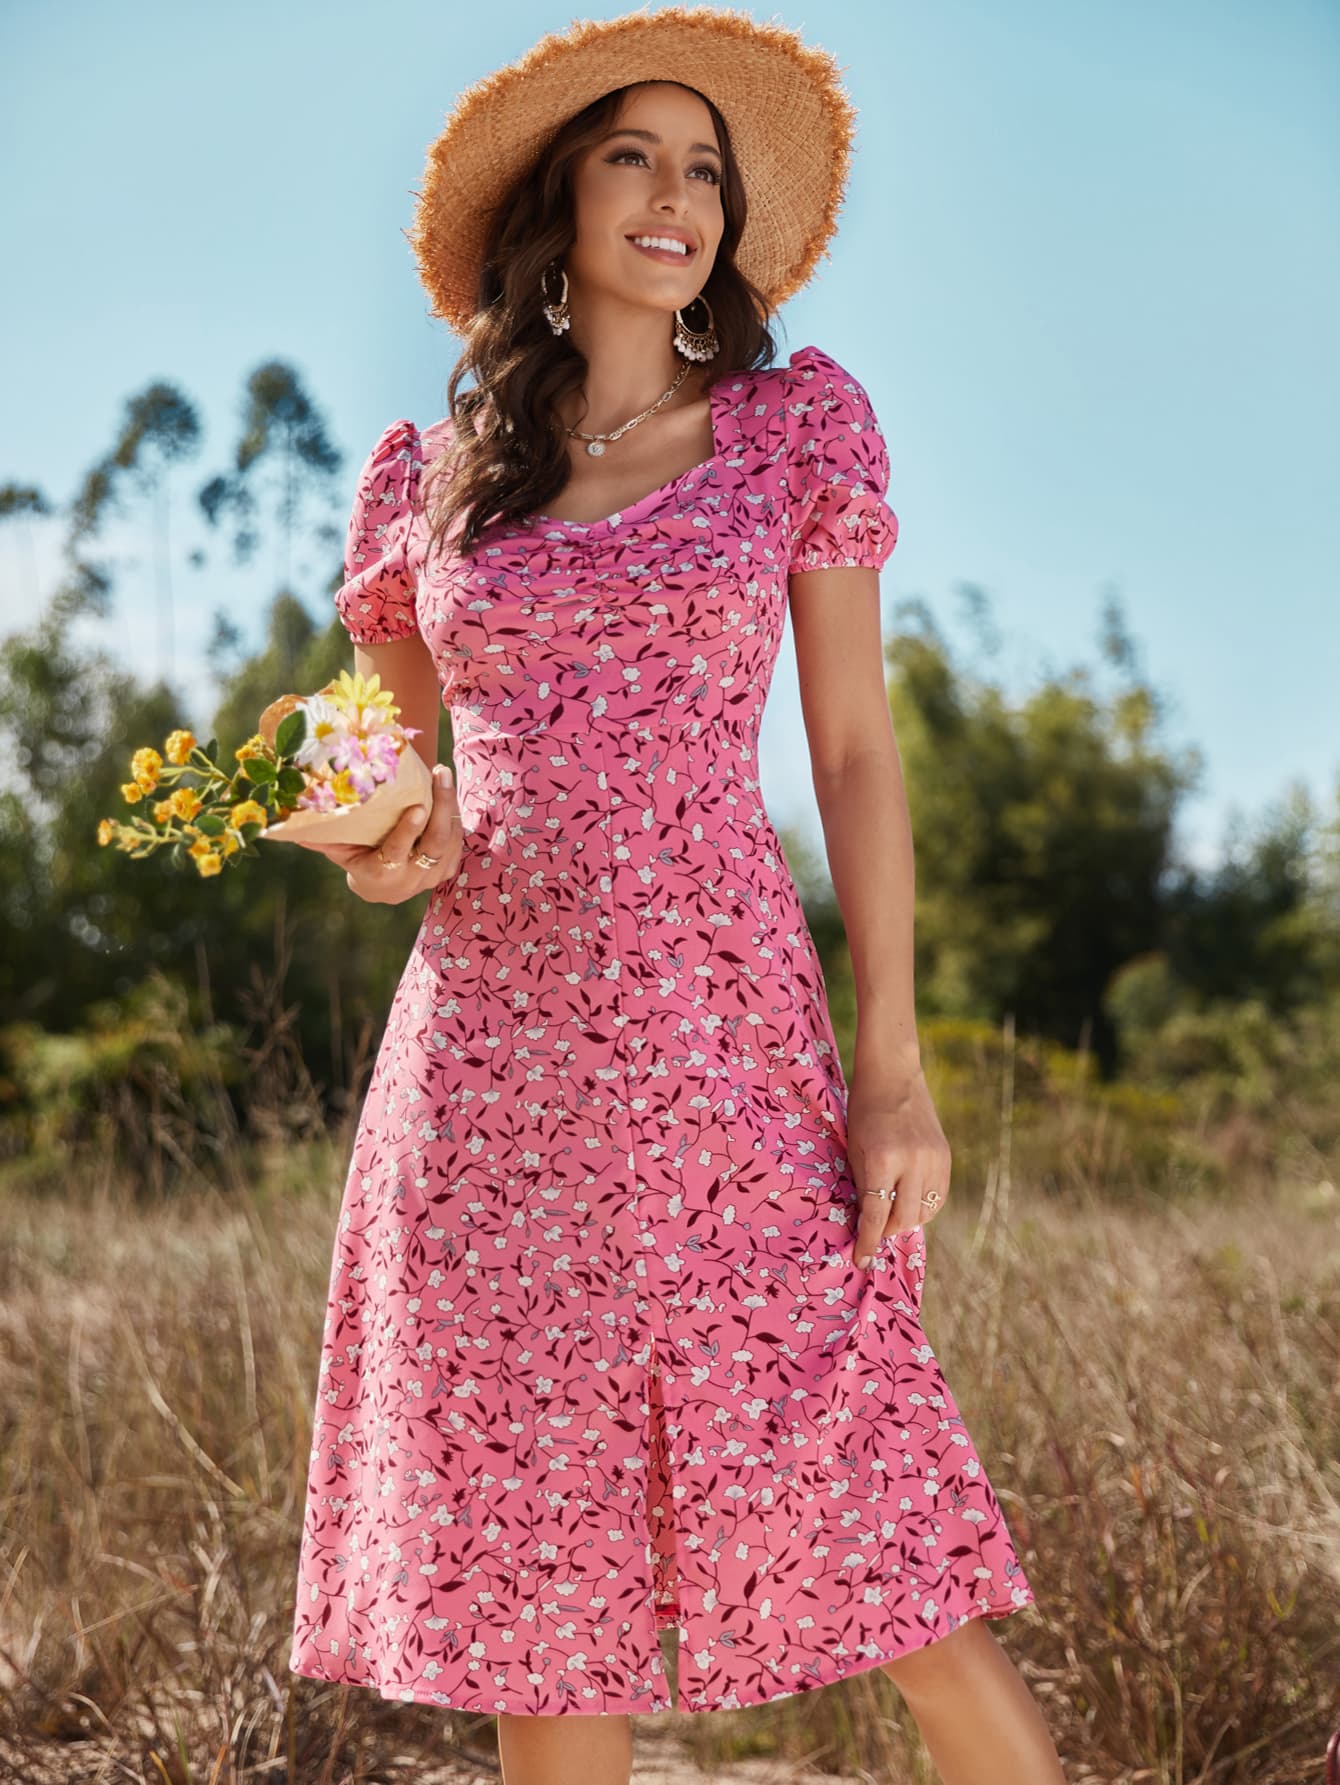 Floral Ruched Front Slit Dress - Online Only